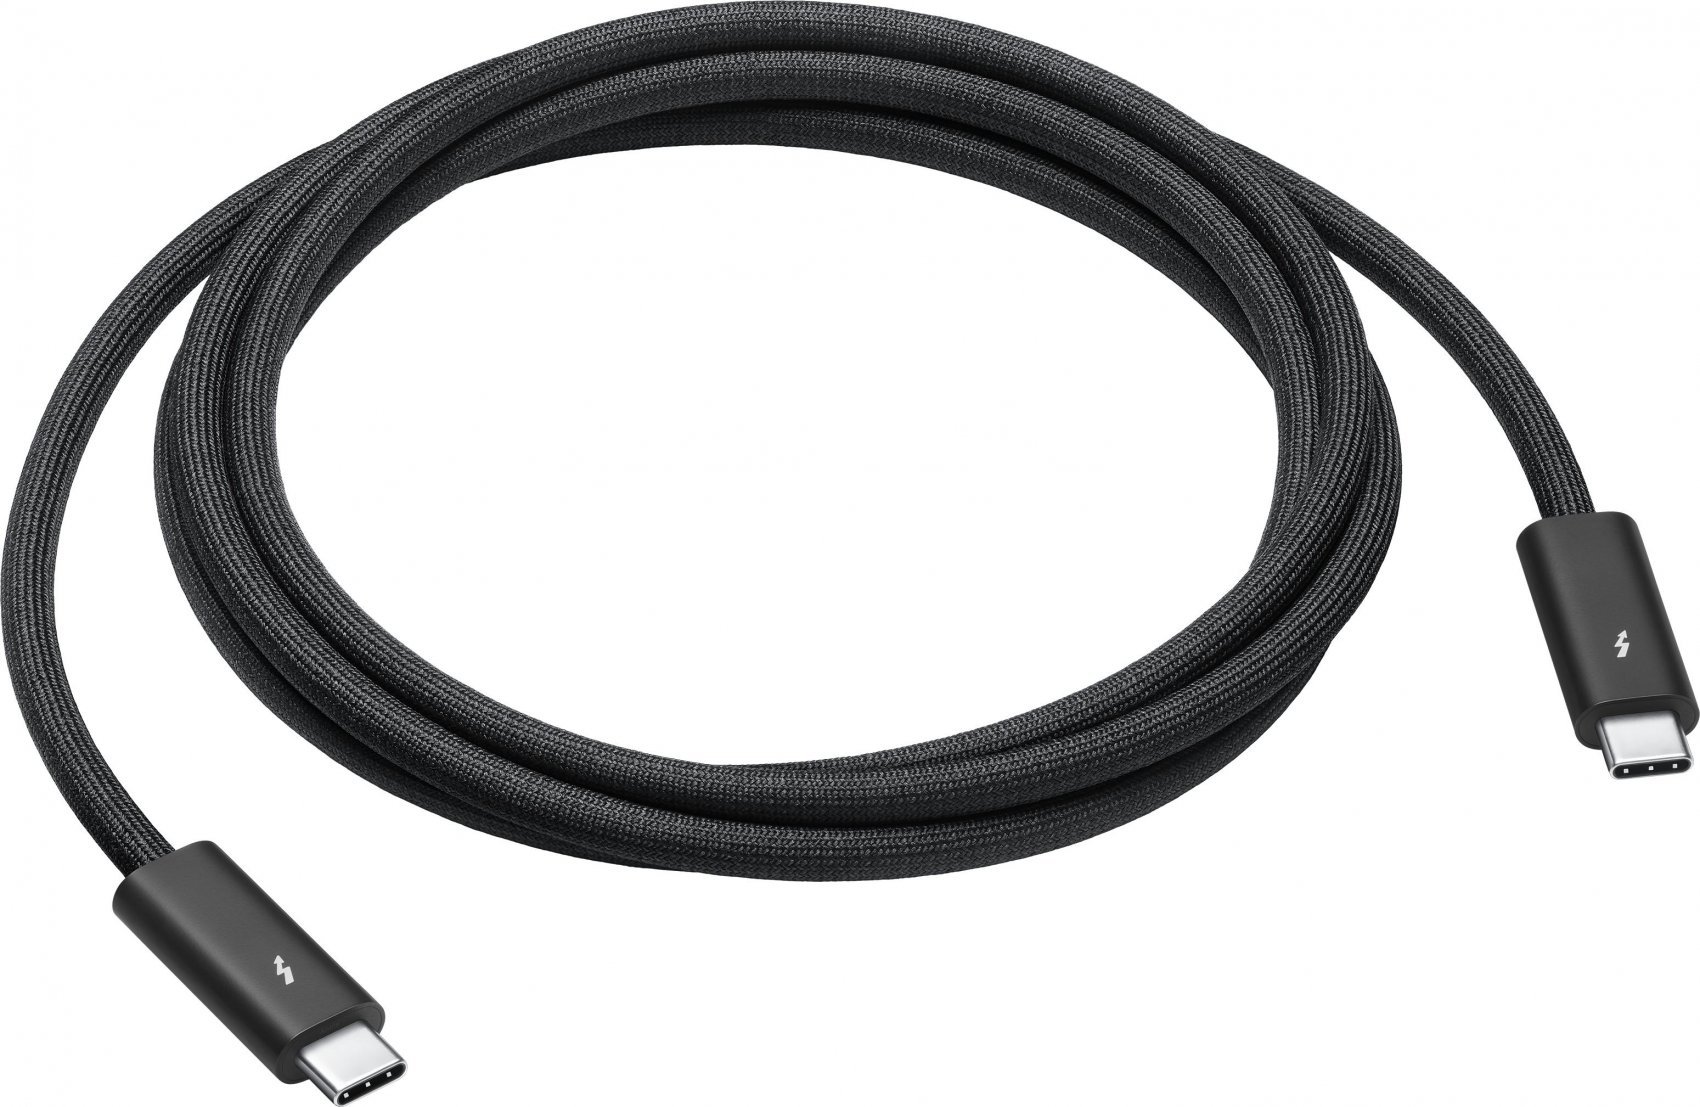 Equip Alargador USB Macho / USB 2.0 Hembra 1.8m Negro - Cable USB